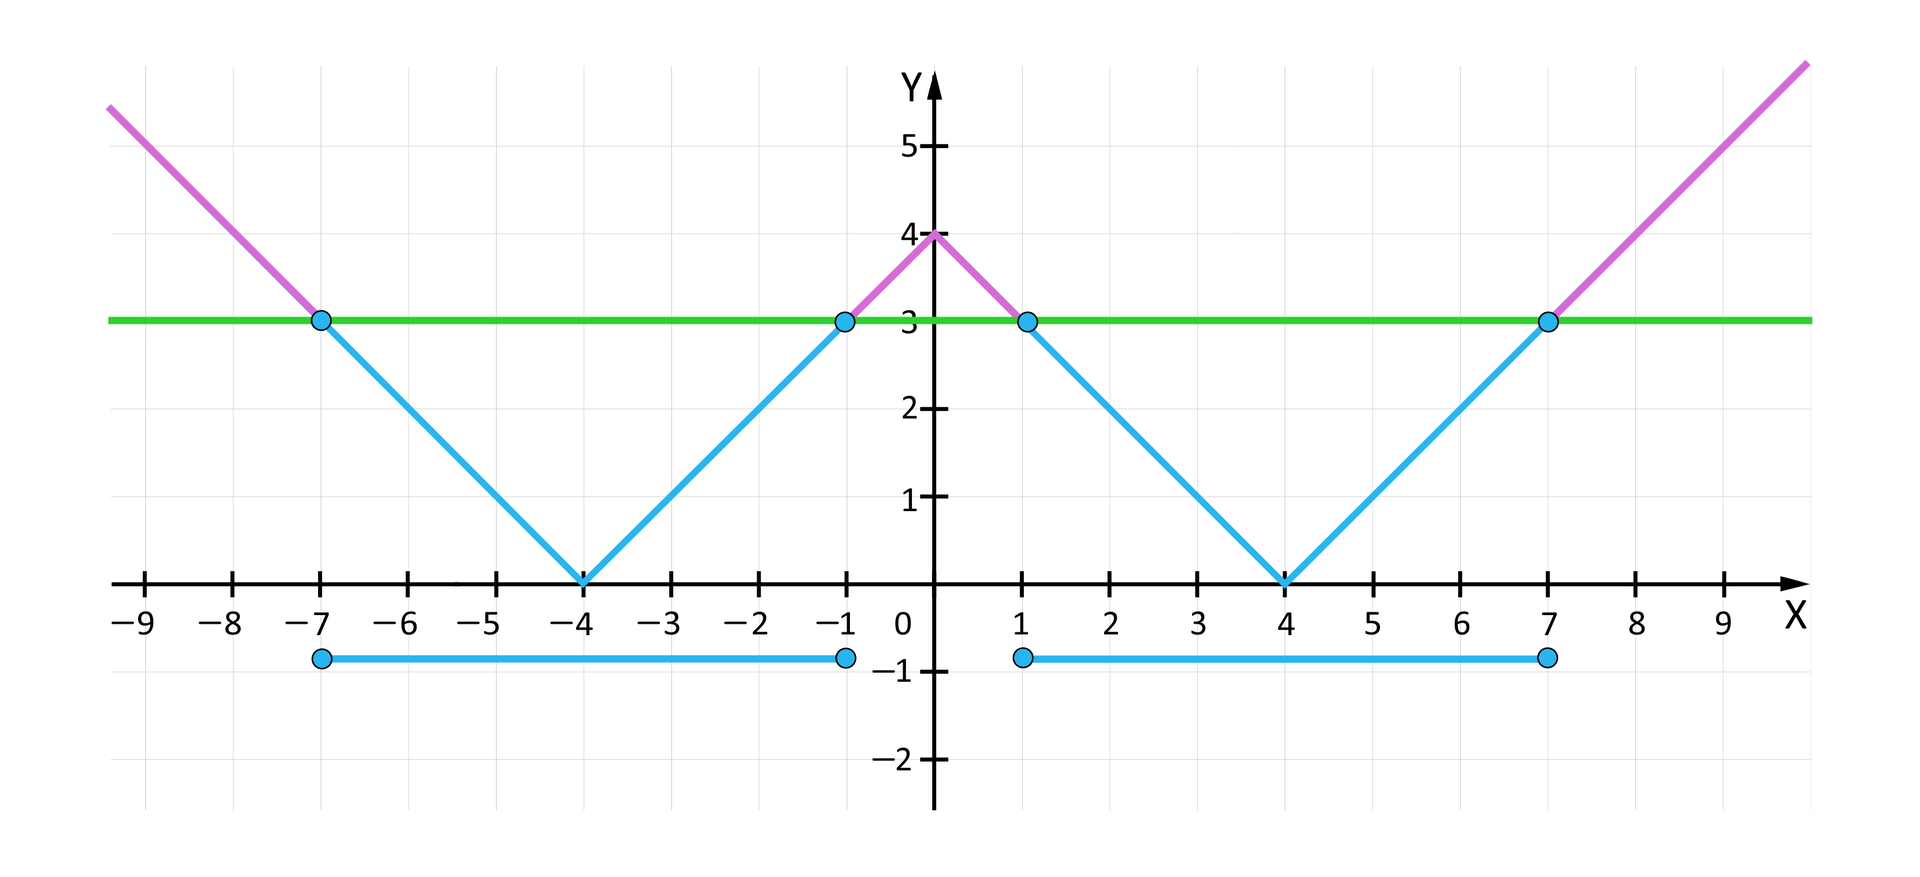 Ilustracja przedstawia układ współrzędnych z poziomą osią X od minus 9 do 9 oraz z pionową osią Y od minus 2 do 5.  Pod osią X narysowane są dwa poziome odcinki na wyskokości około minus 1. Pierwszy z nich ma początek dla x równego  minus 7 i koniec dla x równego minus 1, a drugi ma początek dla x równego 1 i koniec dla x równego 7. Odcinki te są  symetryczne względem osi Y. Na rysunku przedstawiony jest także wykres funkcji y=x-4. Wykres ten jest w kształcie litery W, a jego punkty szczególne to: -4;0, 0;4, 4;0. Ostatnim elementem rysunku jest pozioma prosta przecinająca opisany wykres funkcji. Równanie tej prostej to: y=3, natomiast punkty przecięcia z wykresem to: -7;3, -1;3, 1;3, 1;7.